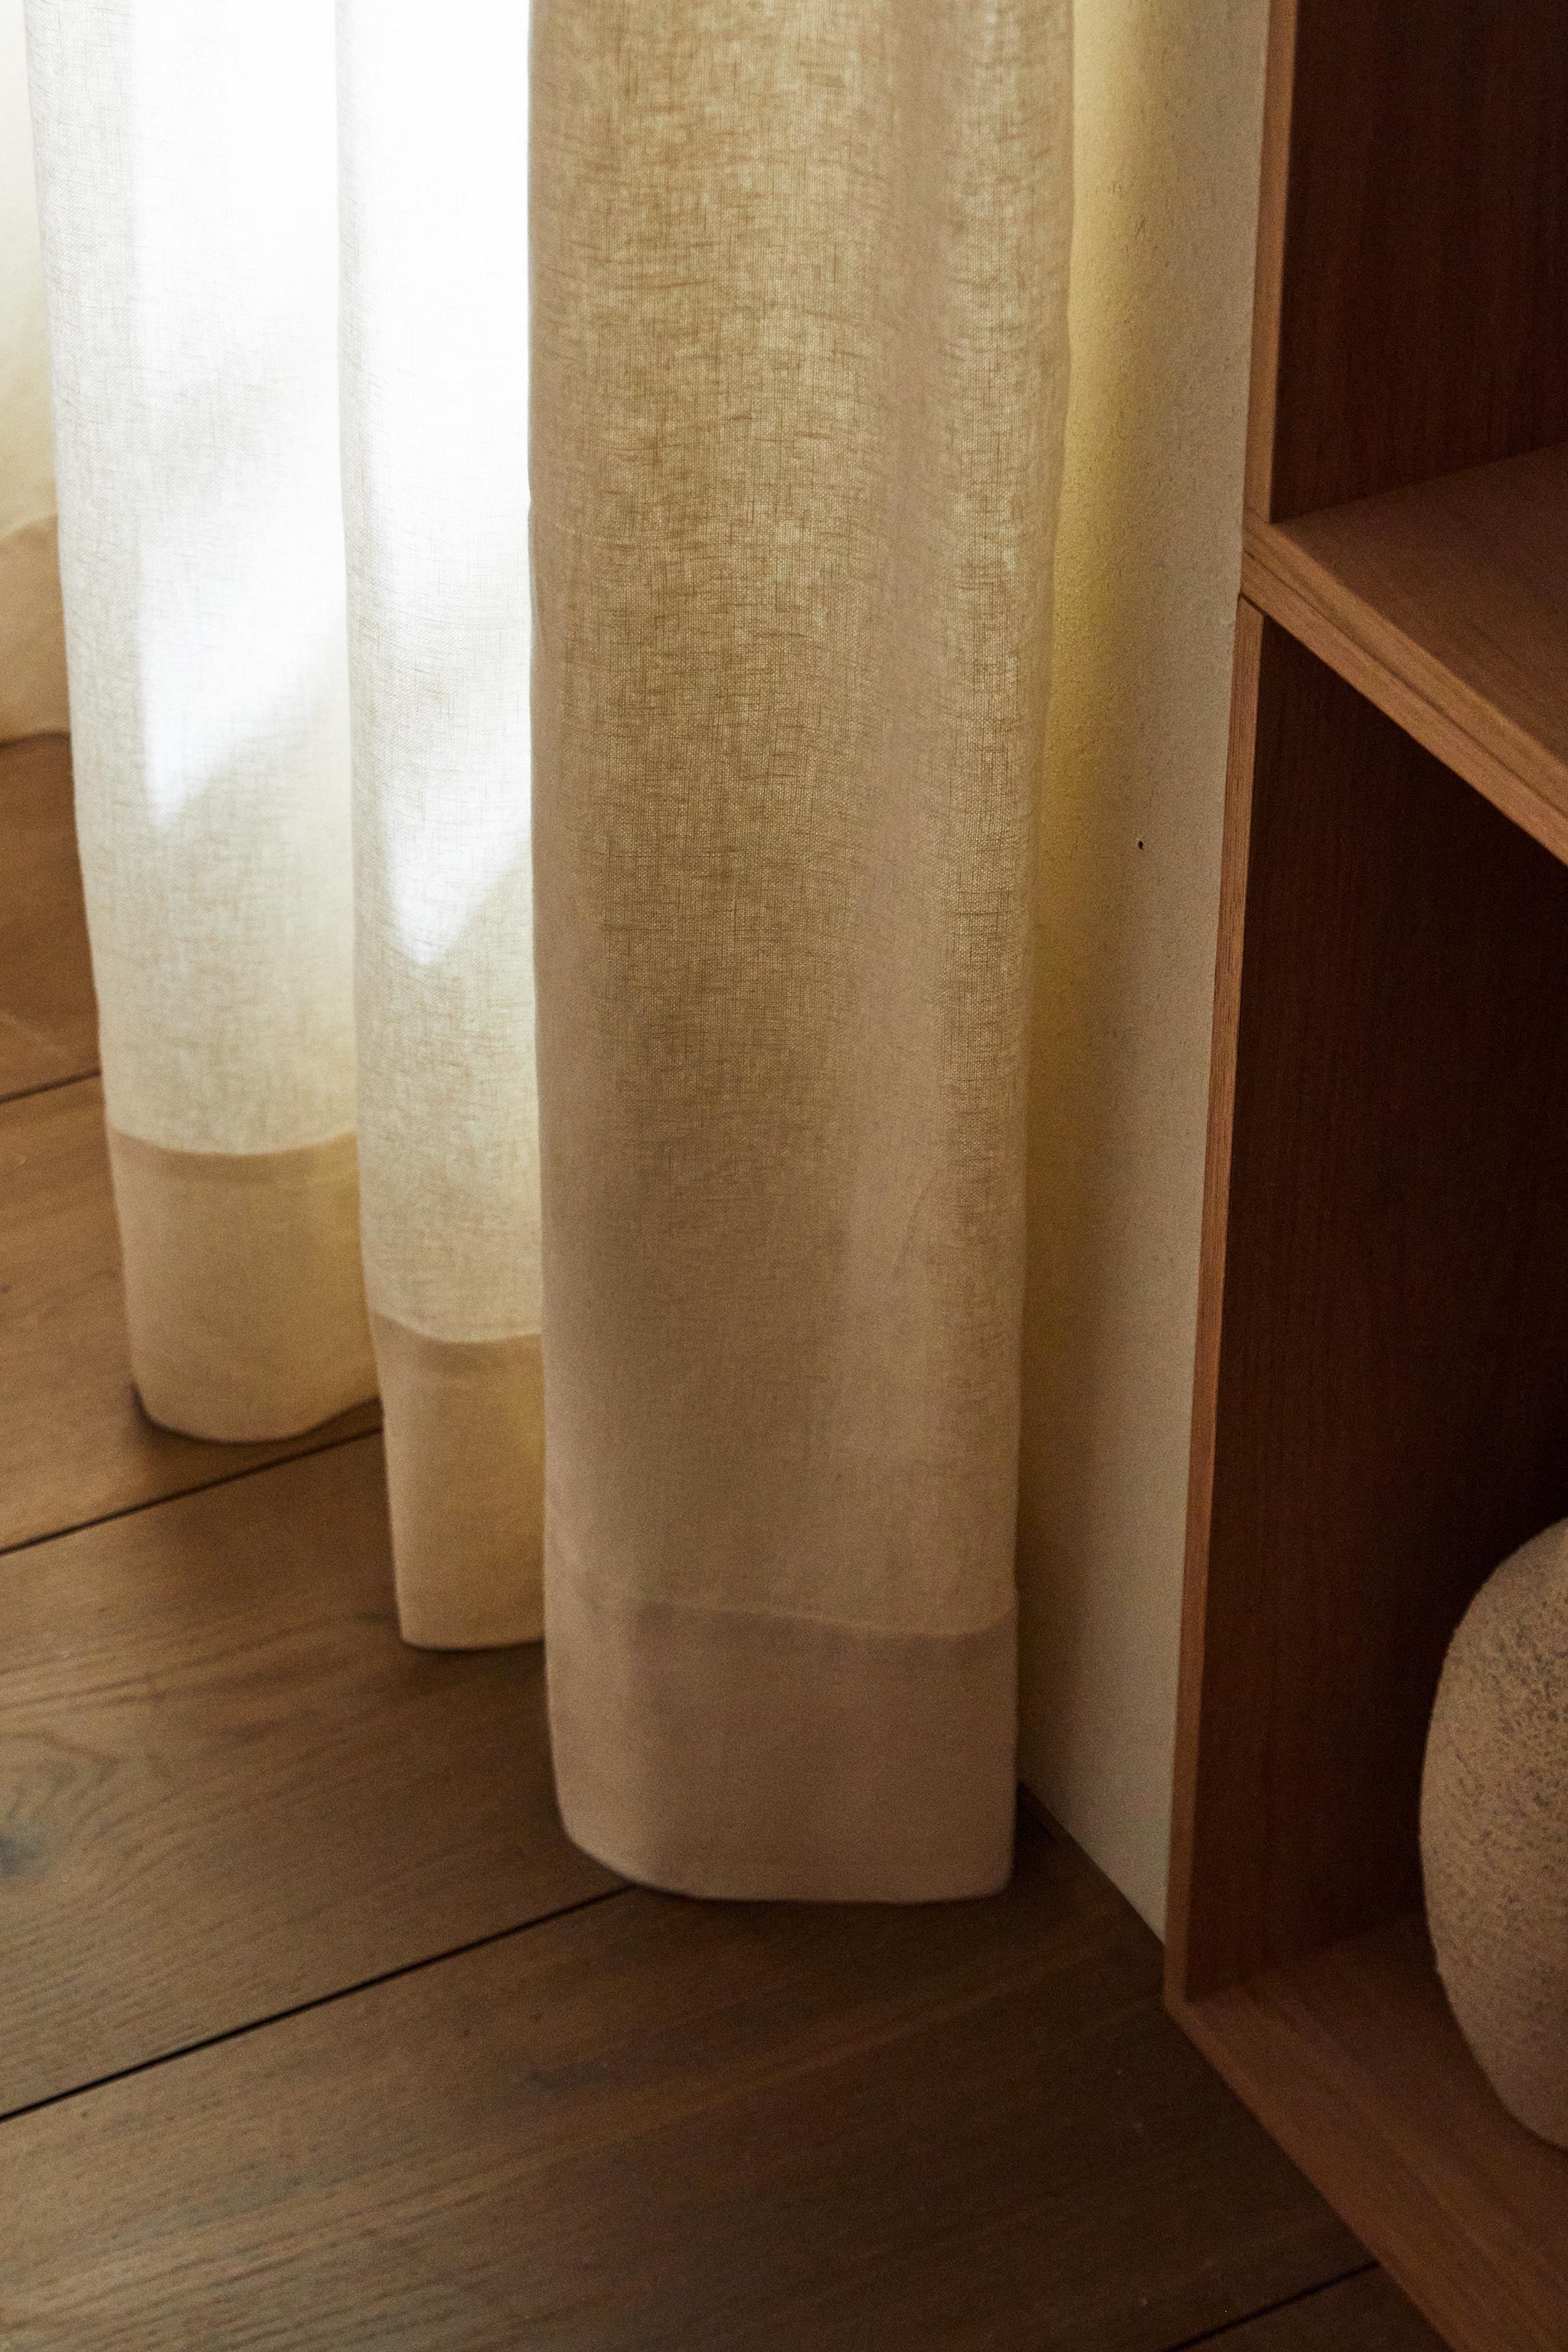 Las 7 cortinas de Zara Home para tu salón fáciles de lavar y colocar